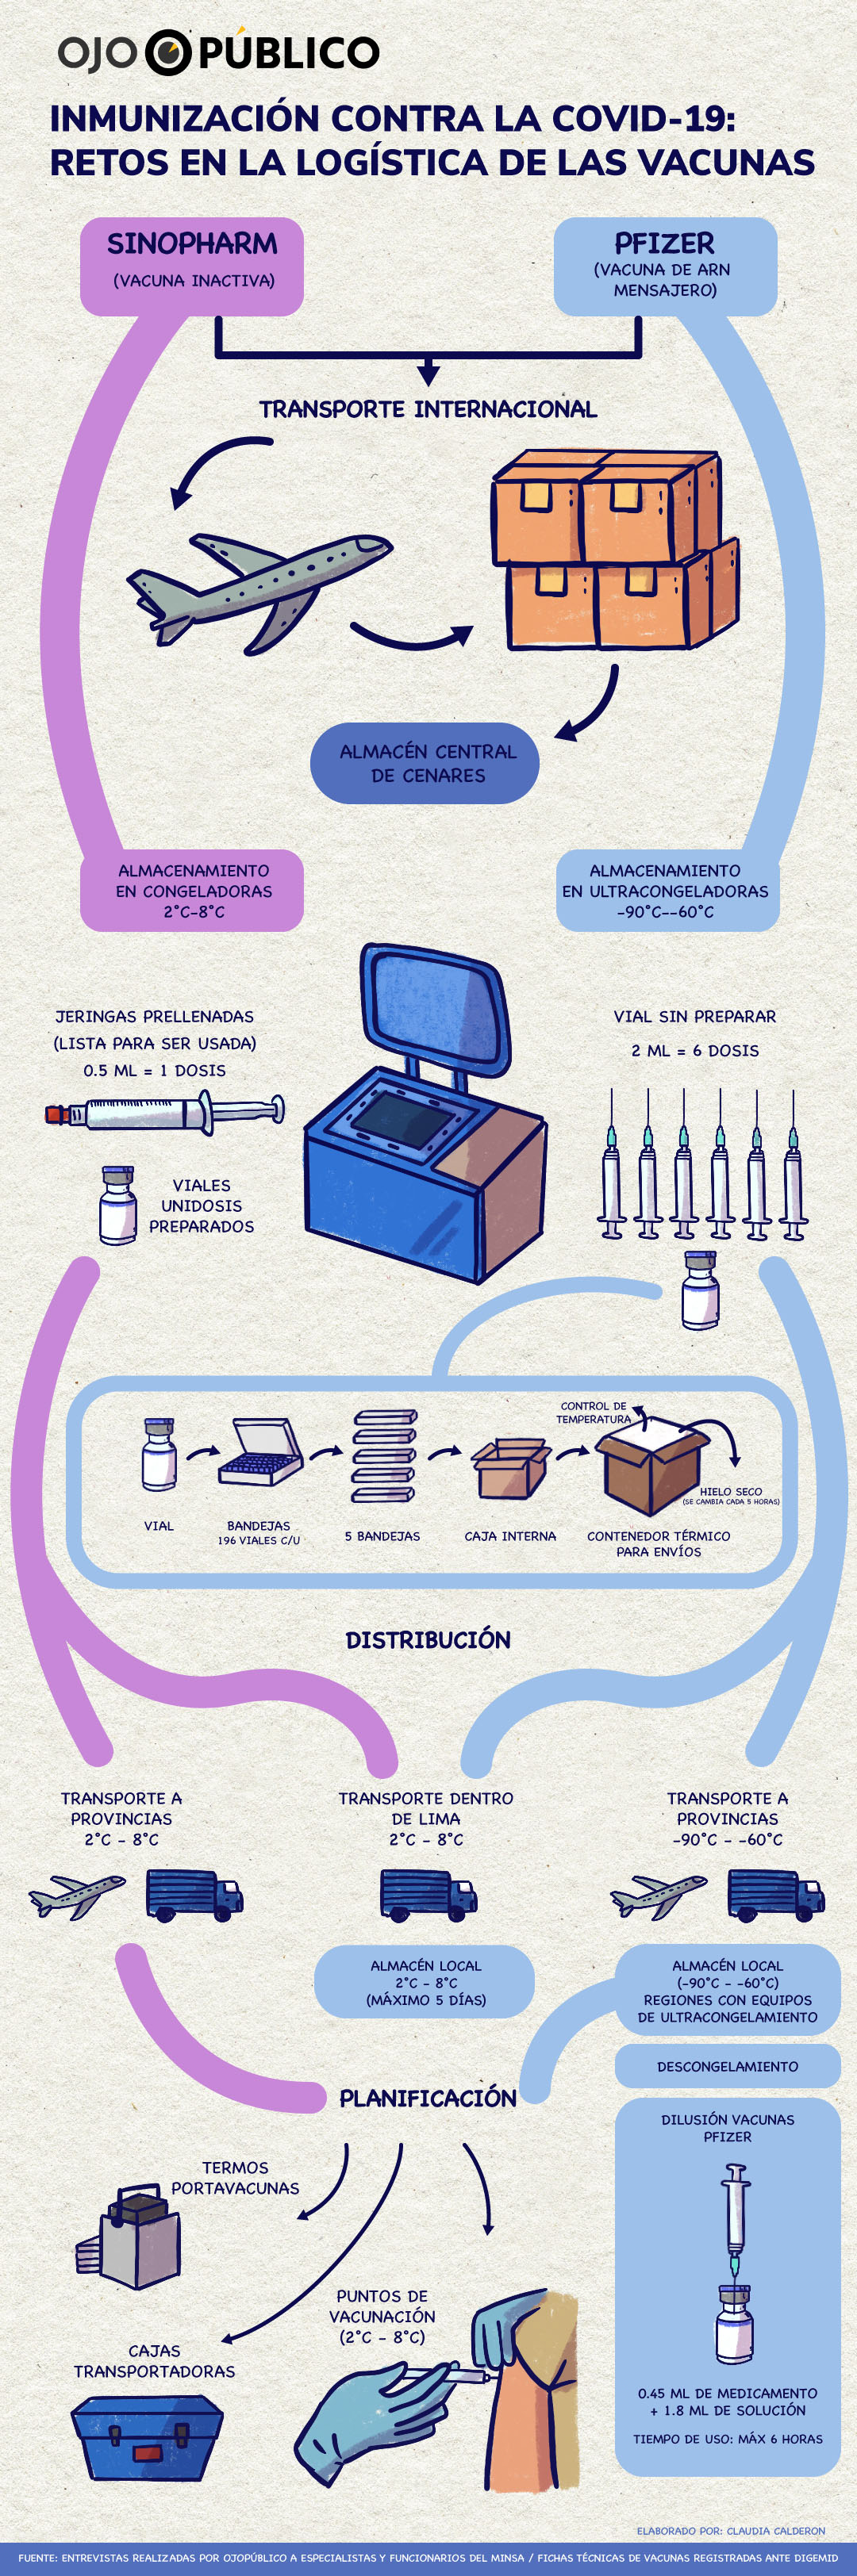 Infografía sobre la logística de las vacunas contra la Covid-19